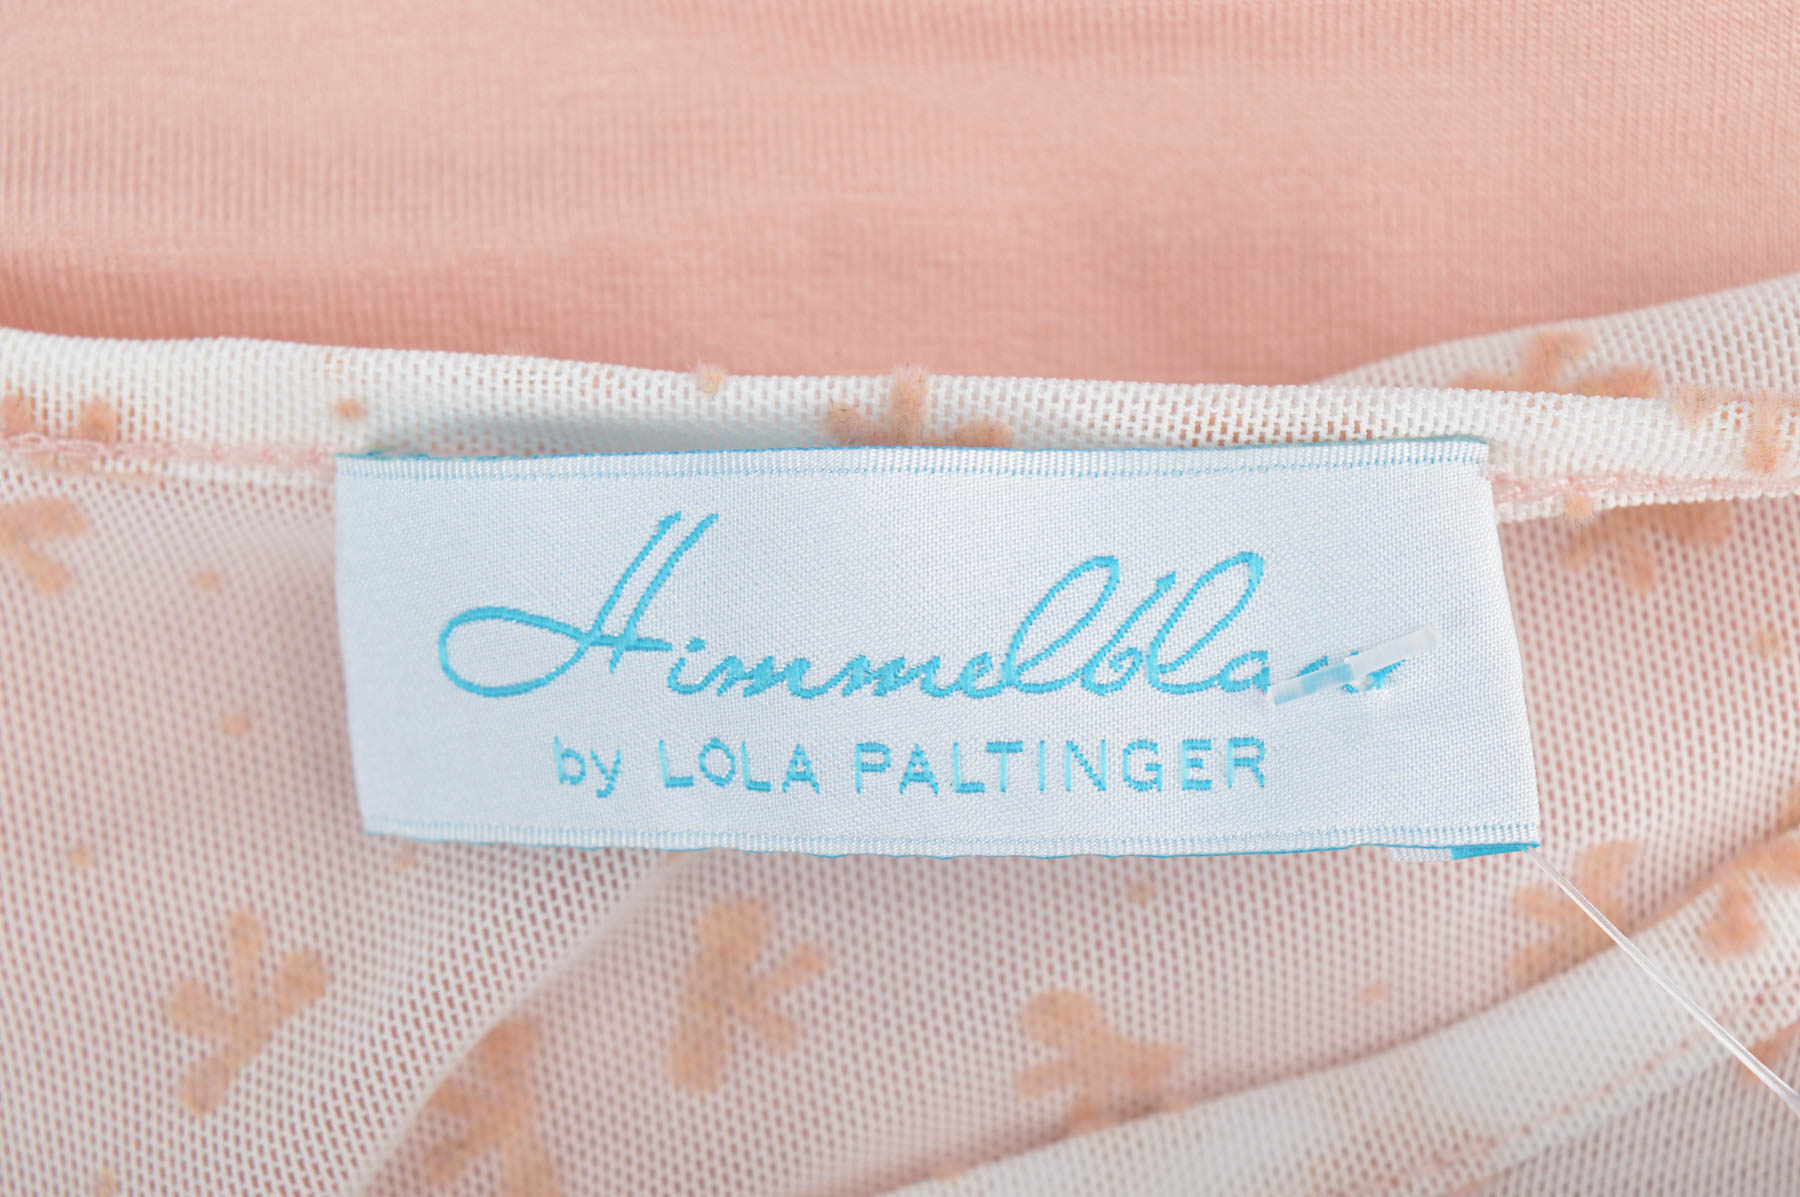 Γυναικεία μπλούζα - Himmelblau by Lola Paltinger - 2